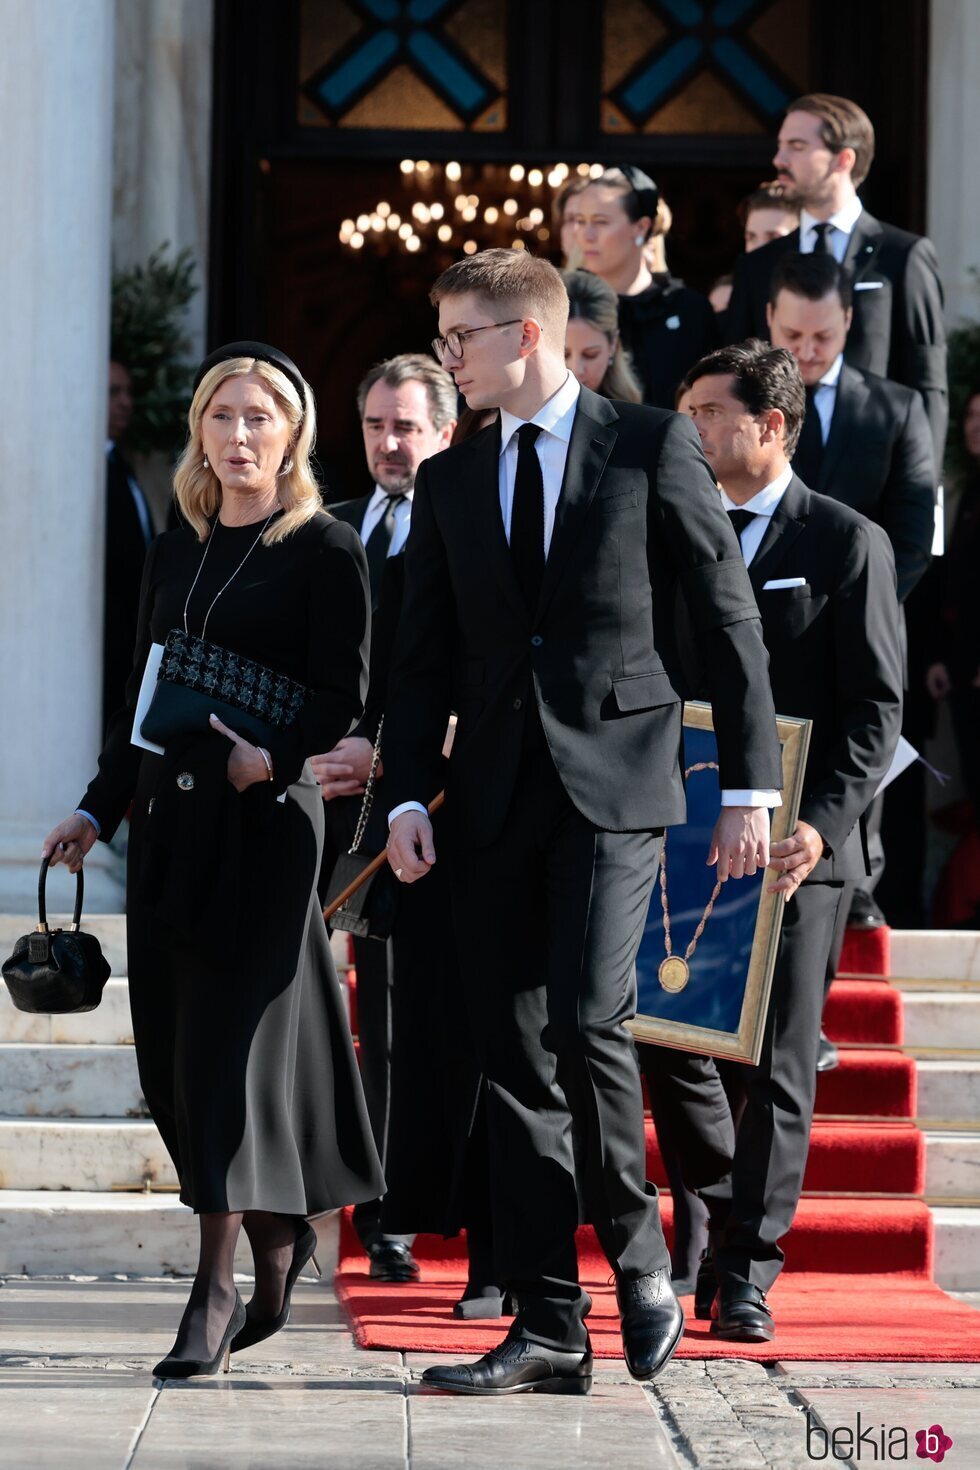 Marie Chantal de Grecia y Constantino Alexios de Grecia tras el funeral de Constantino de Grecia